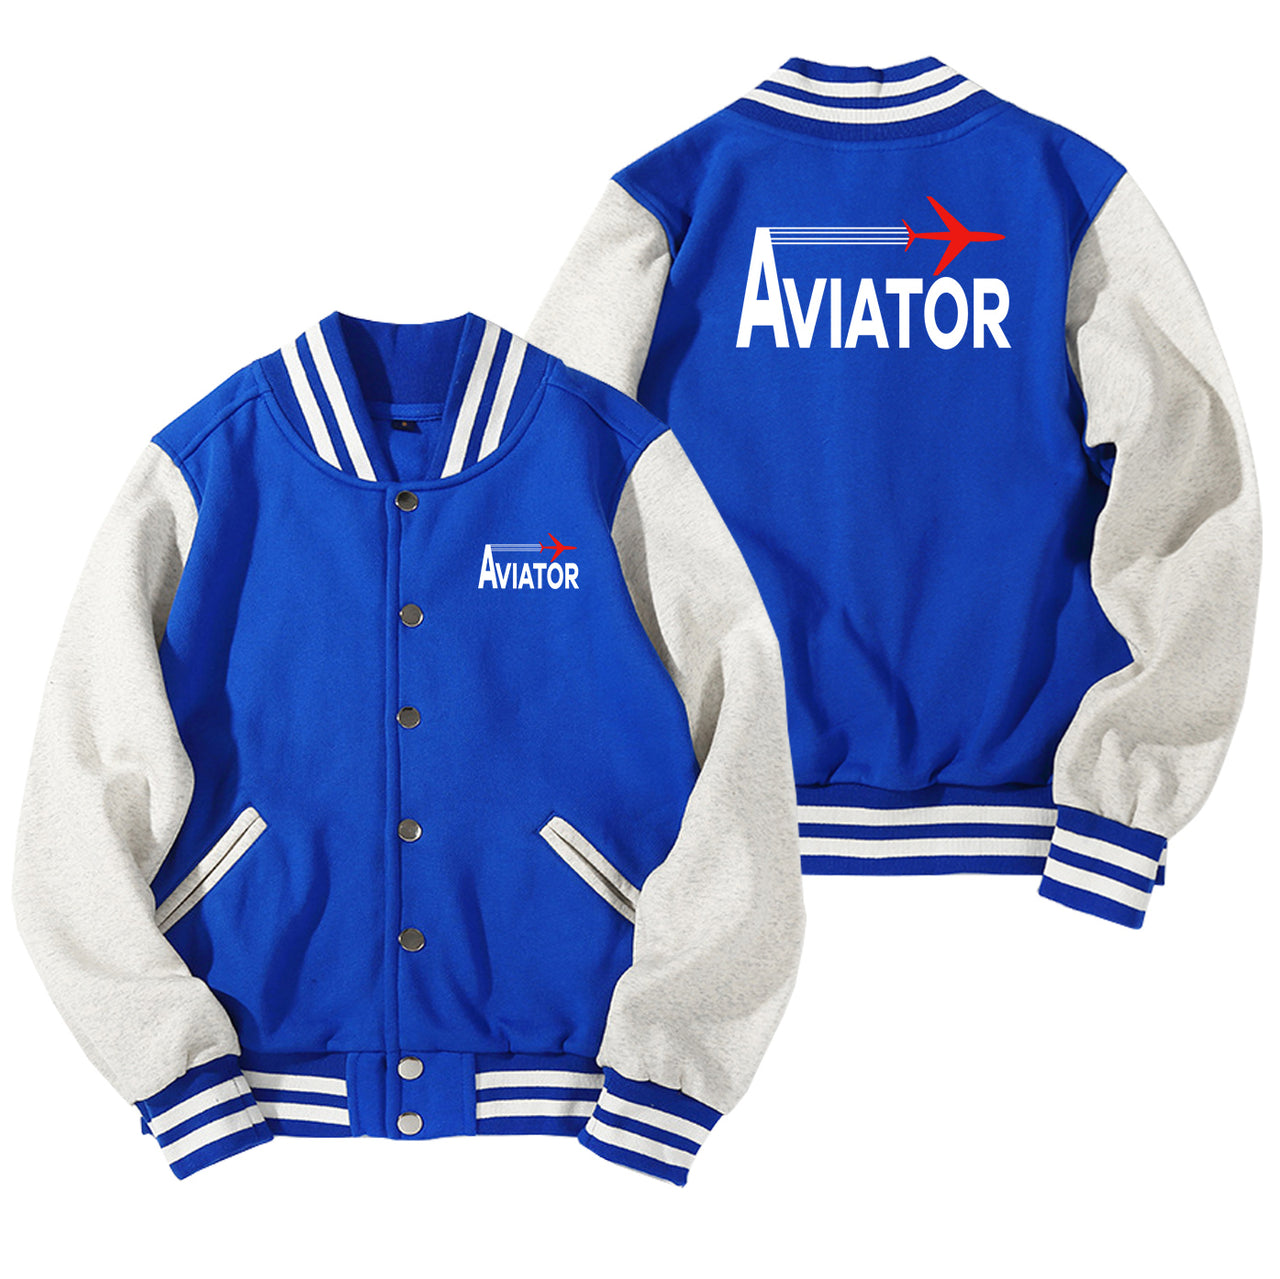 Aviator Designed Baseball Style Jackets